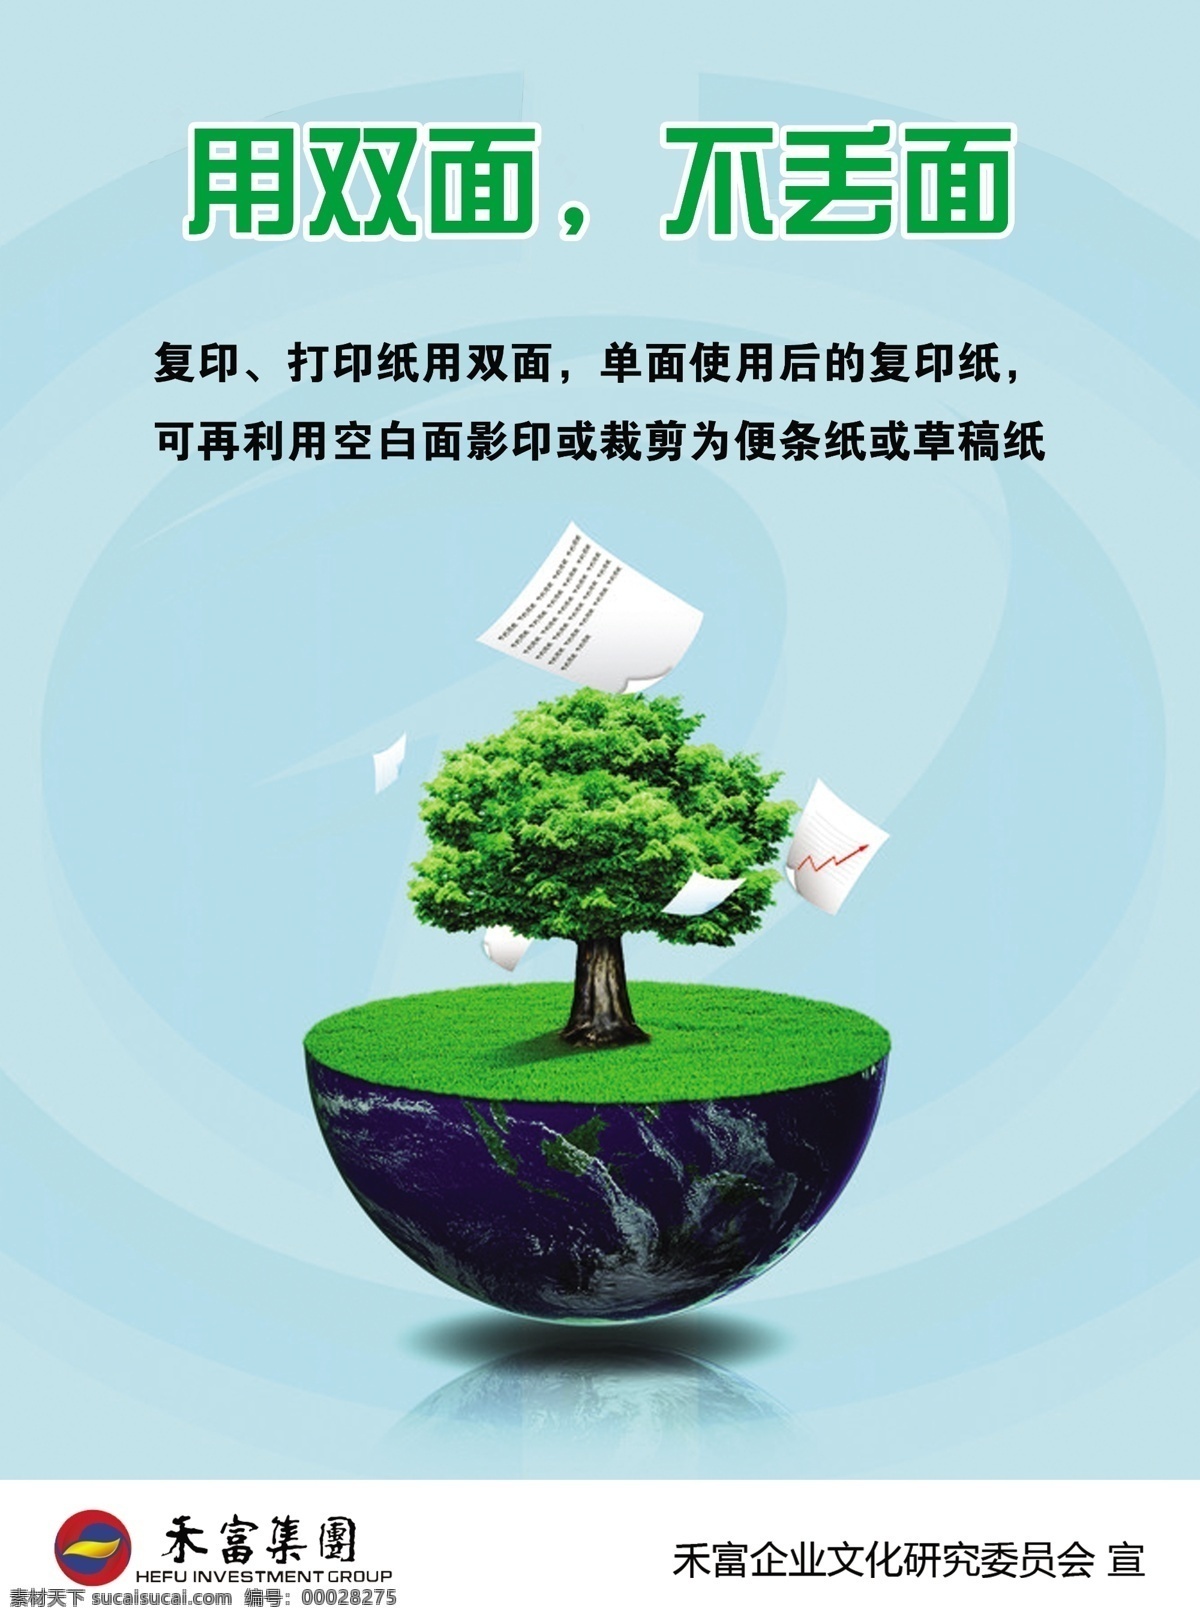 企业文化海报 用双面 不丢面 节约每一张纸 企业文化 办公室 节能 小常 识 宣传标语 纸 绿色 树 地球 广告设计模板 源文件